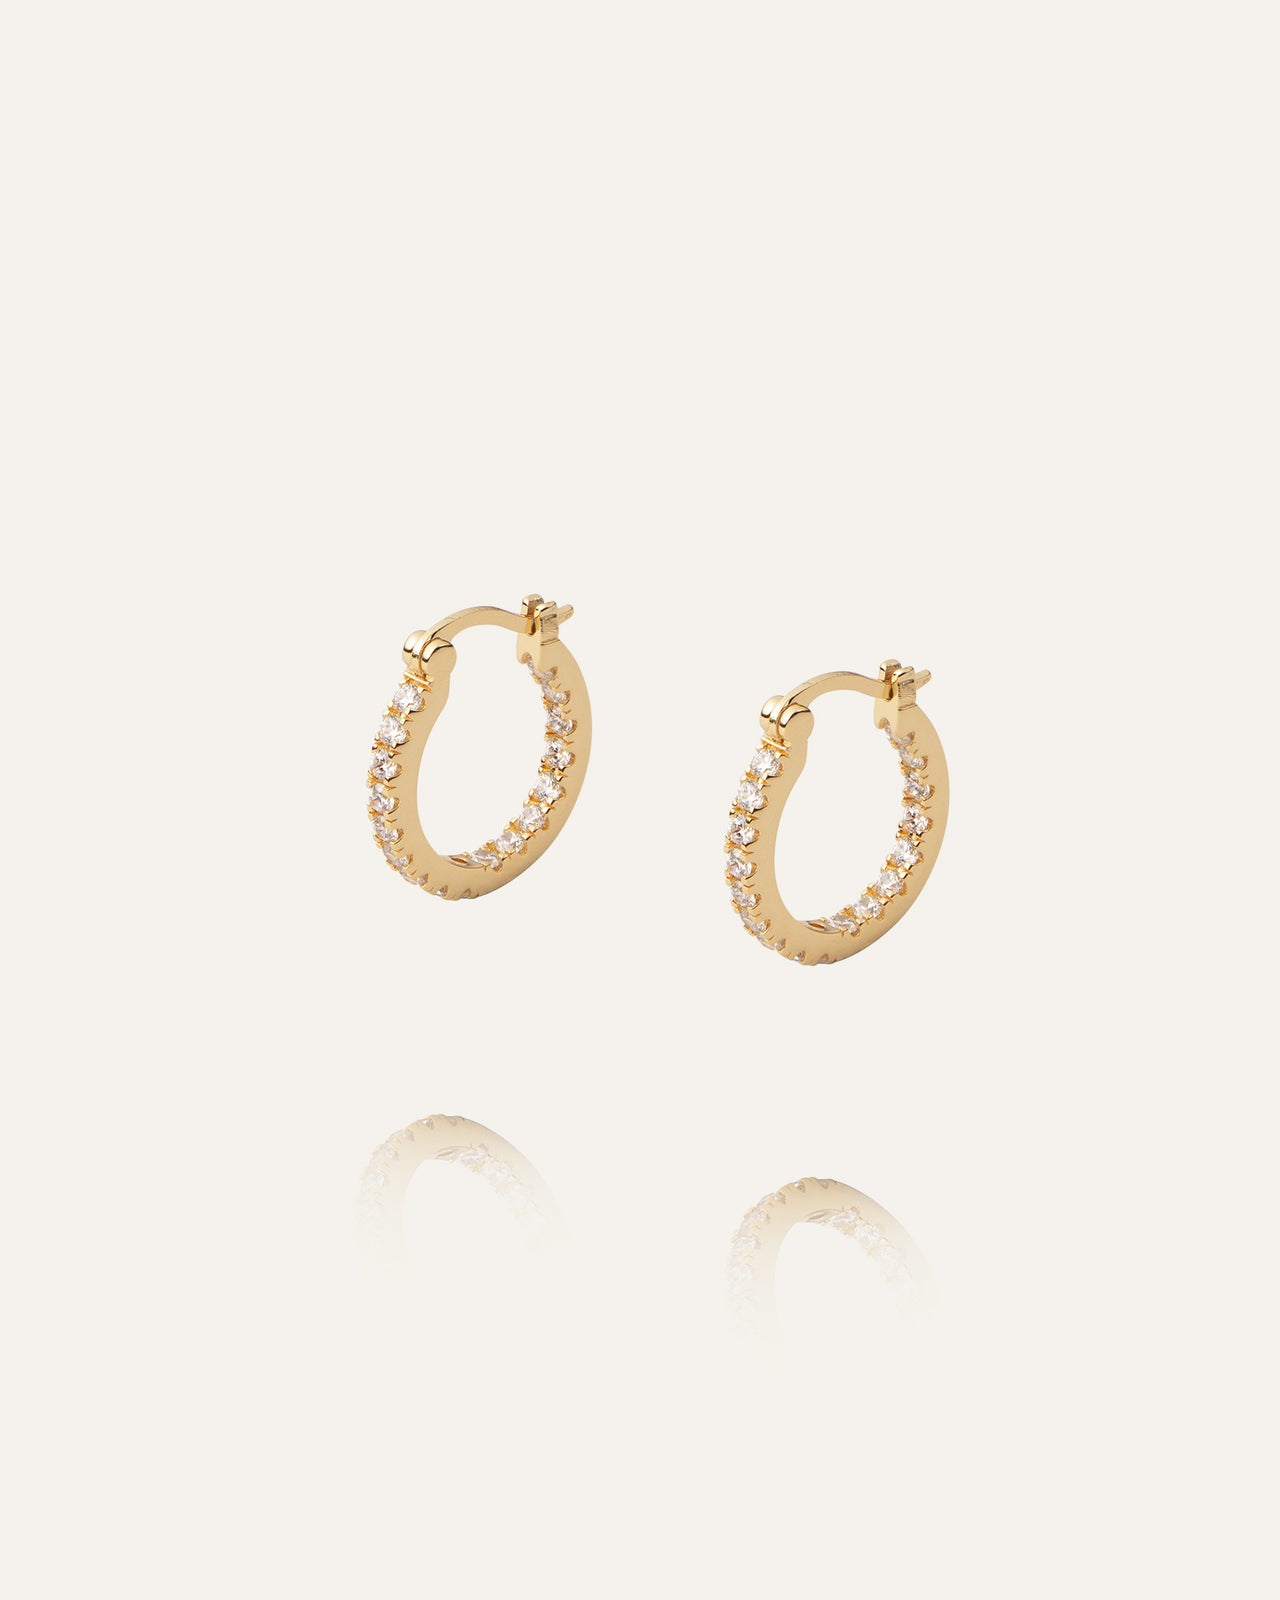 Lunar Earrings Gold / White